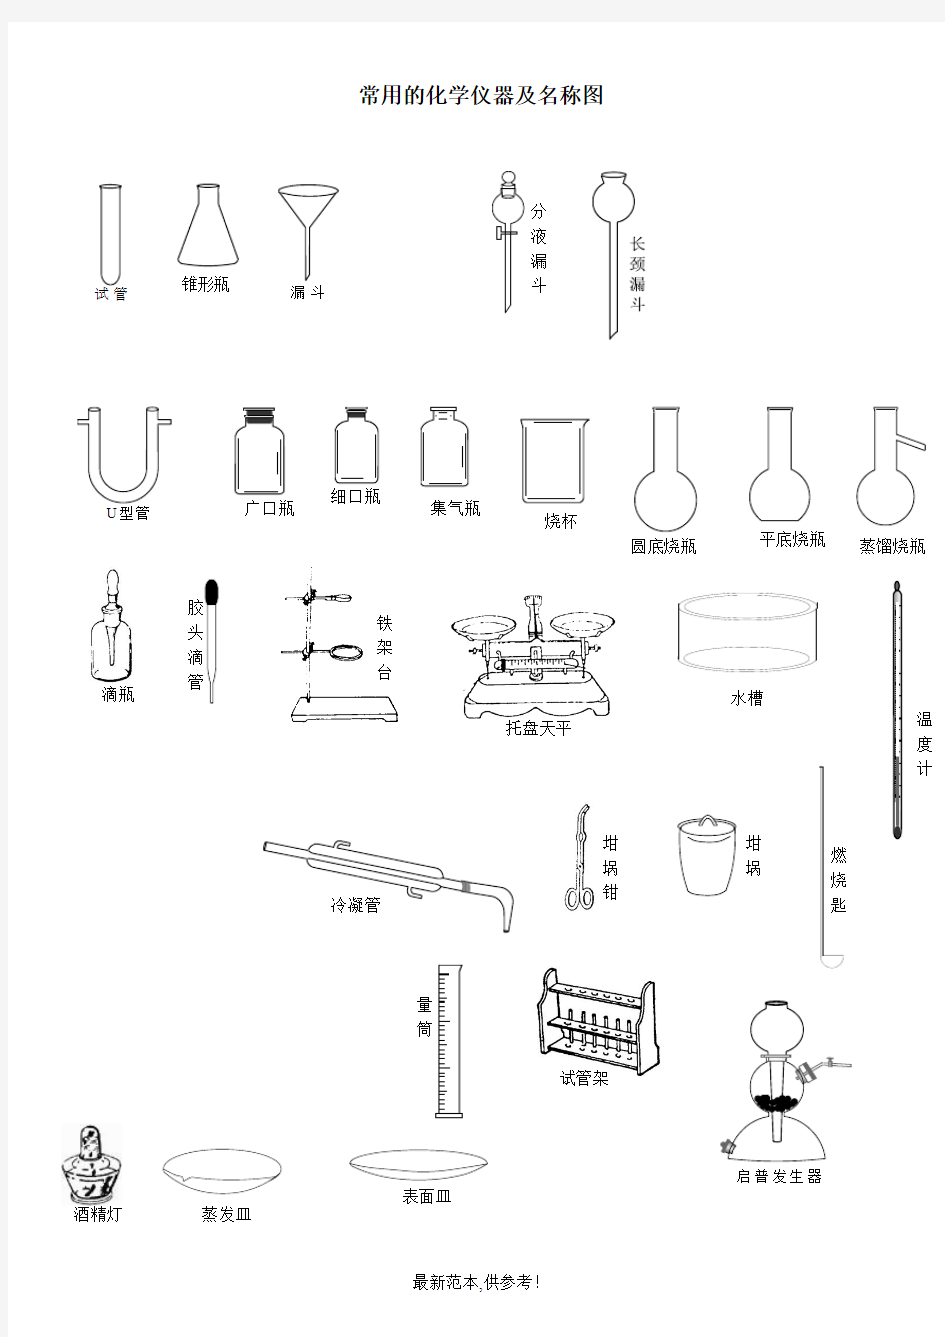 常用的化学仪器及名称图(整理)最新版本